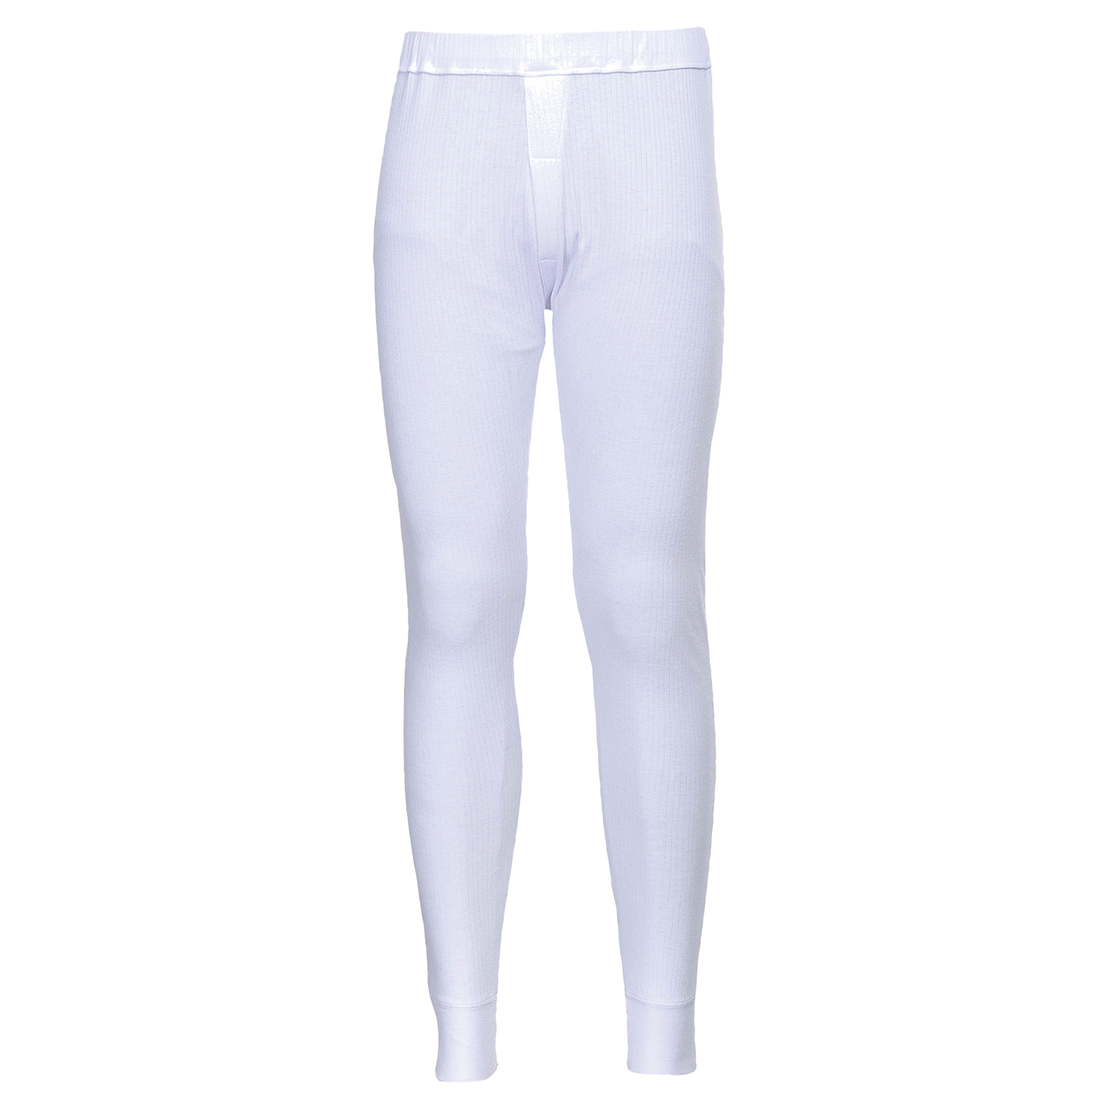 Kalhoty Thermal B121 White